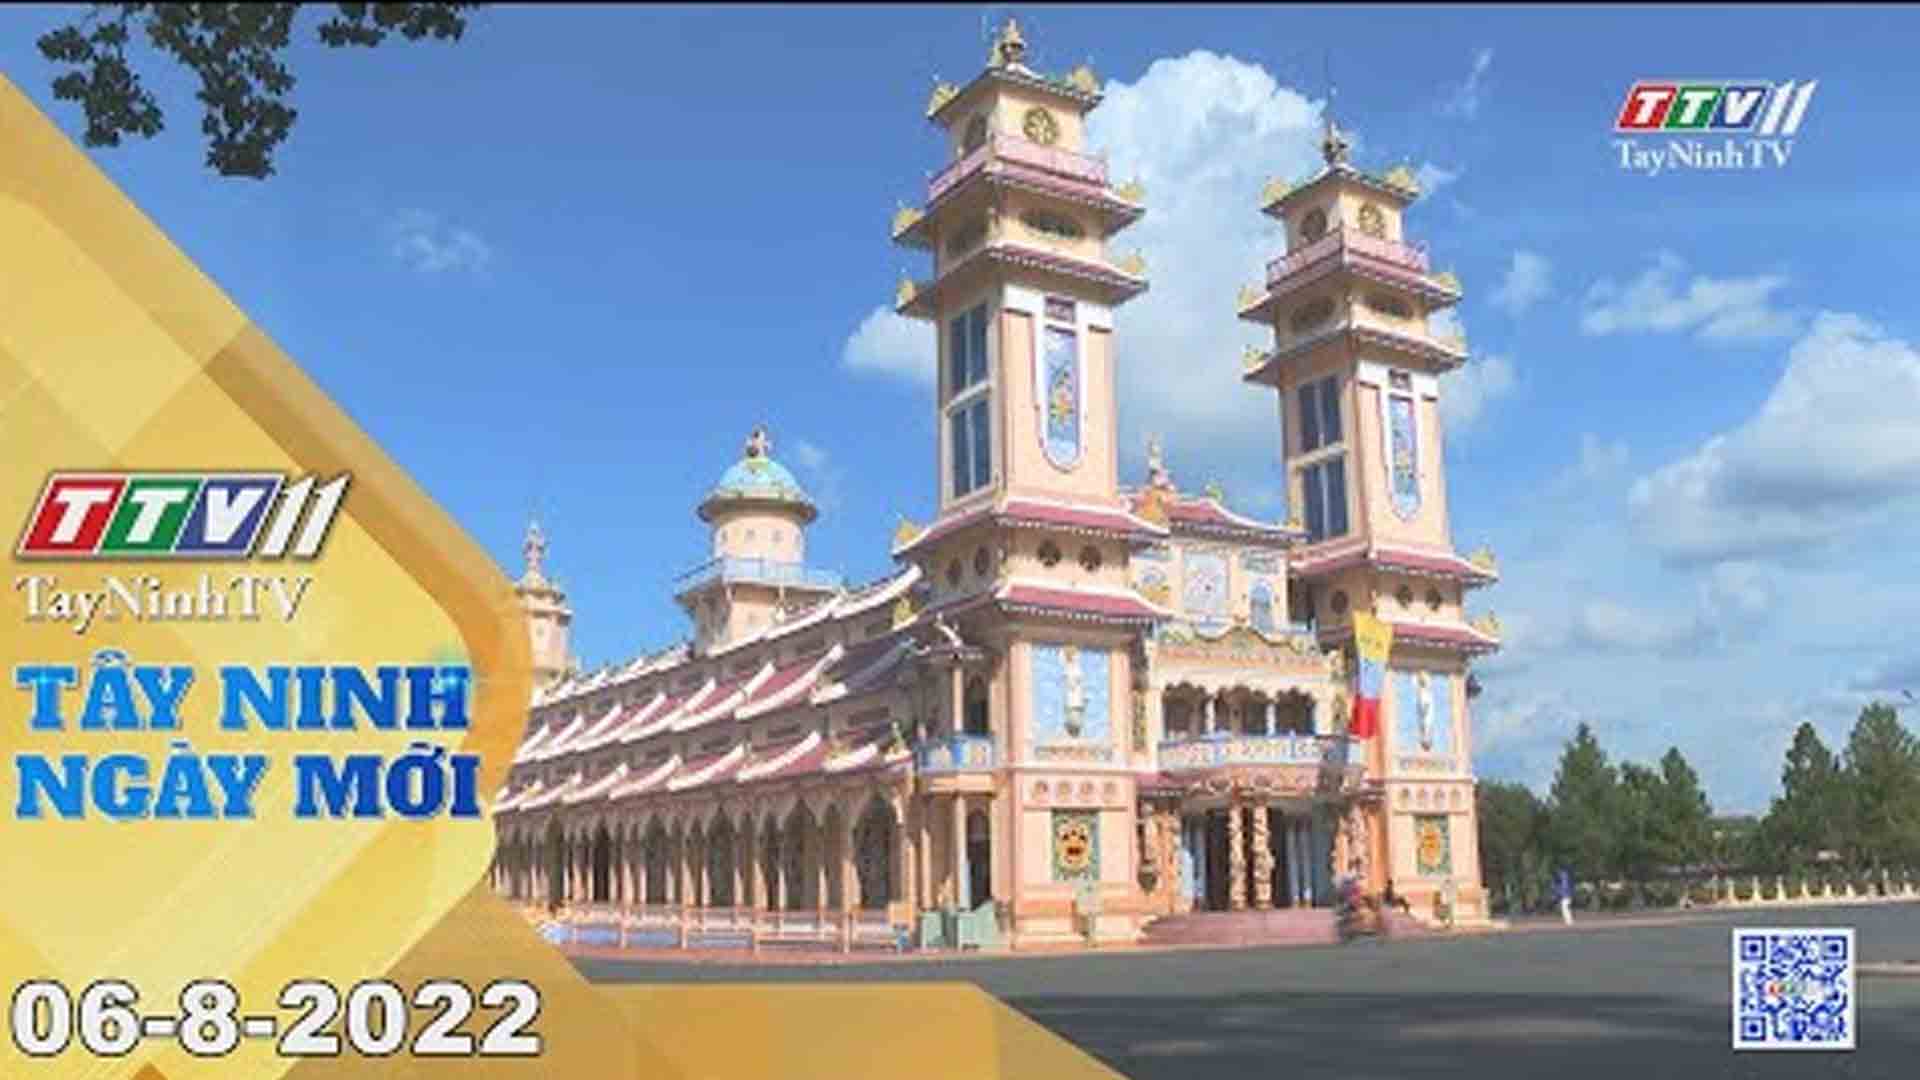 Tây Ninh ngày mới 06-8-2022 | Tin tức hôm nay | TayNinhTV